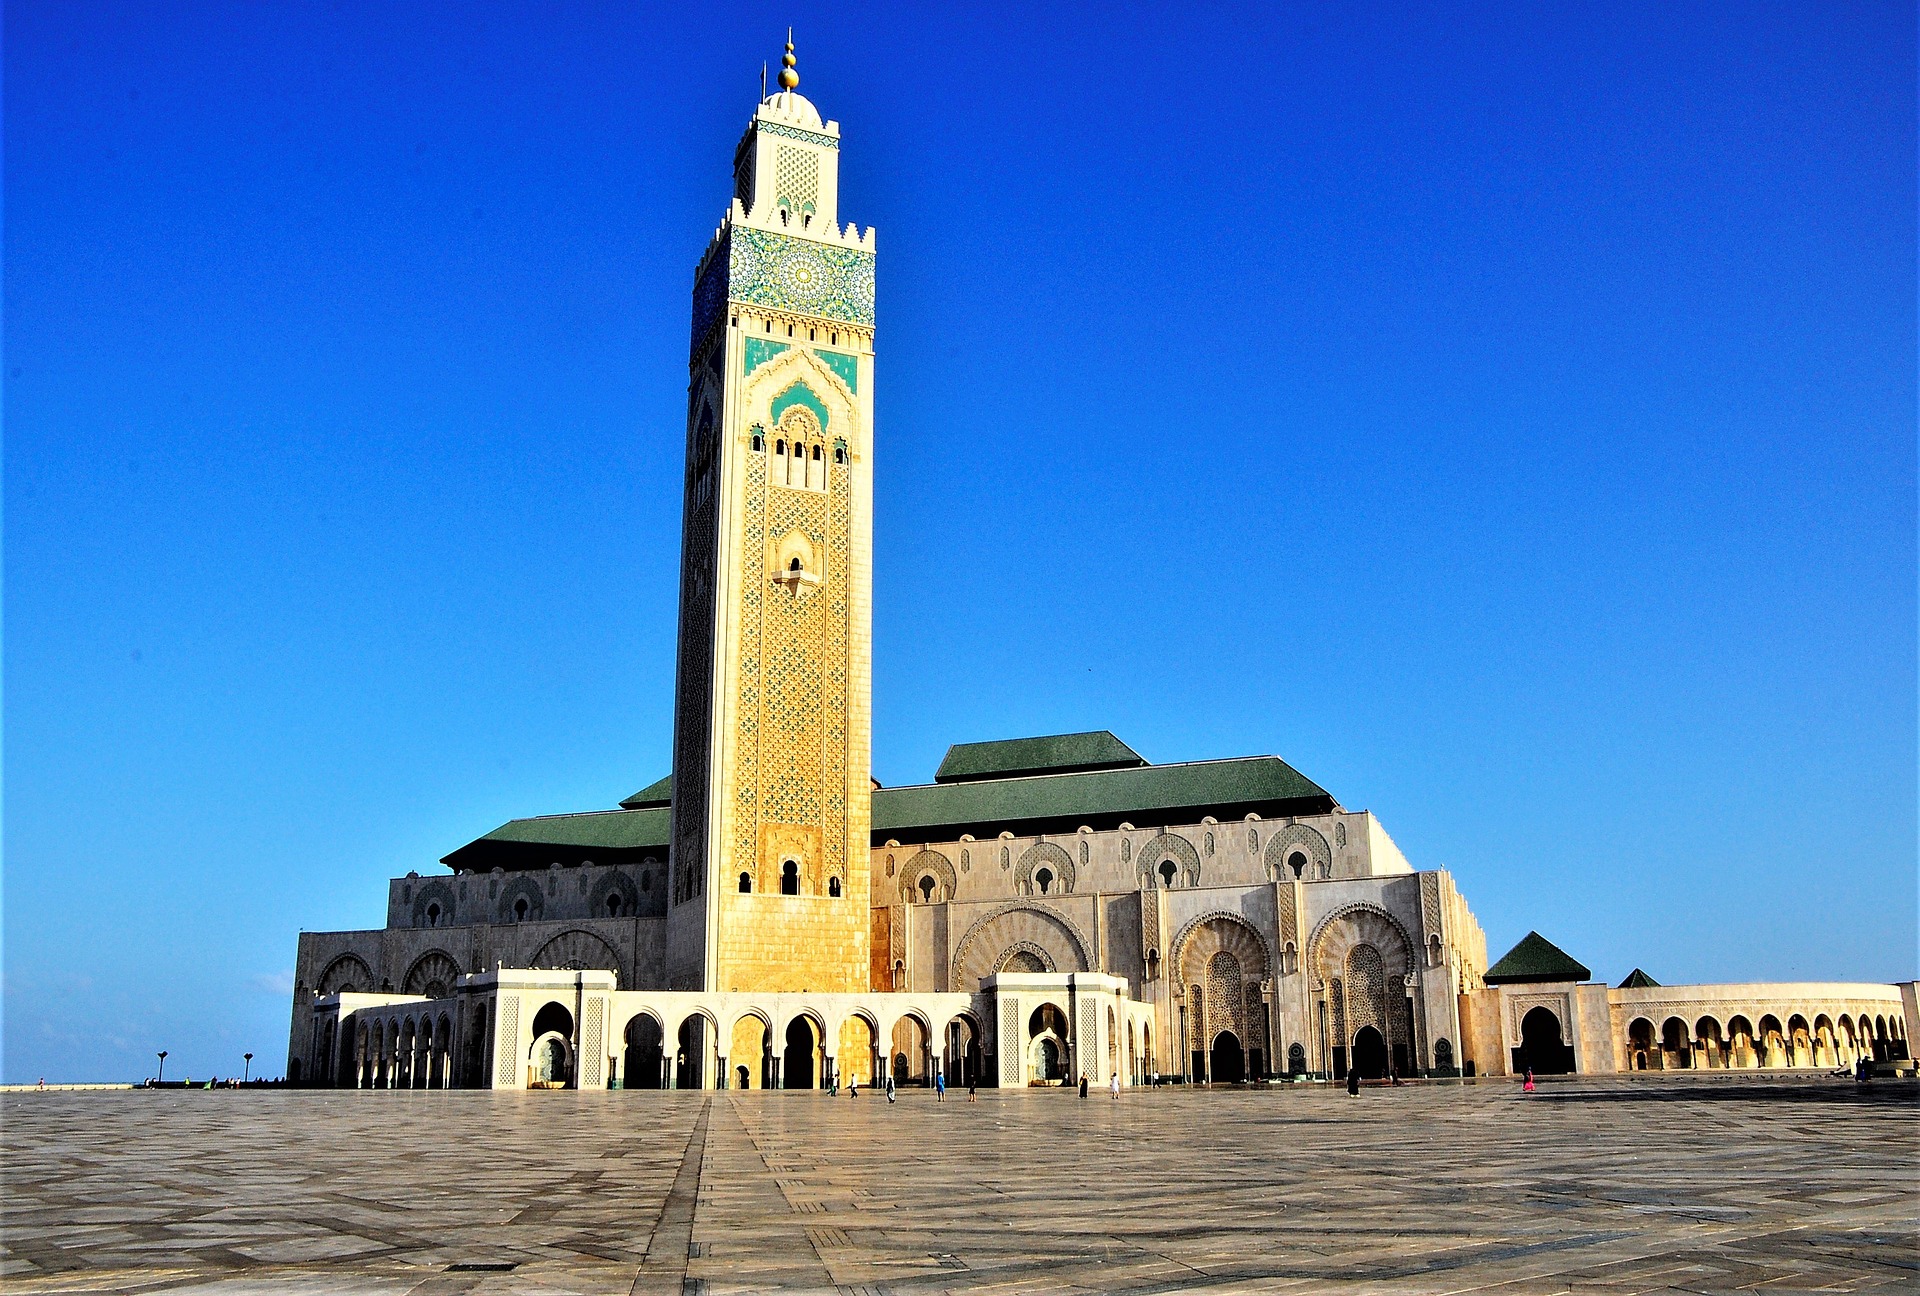 Day 11: Marrakech - Casablanca